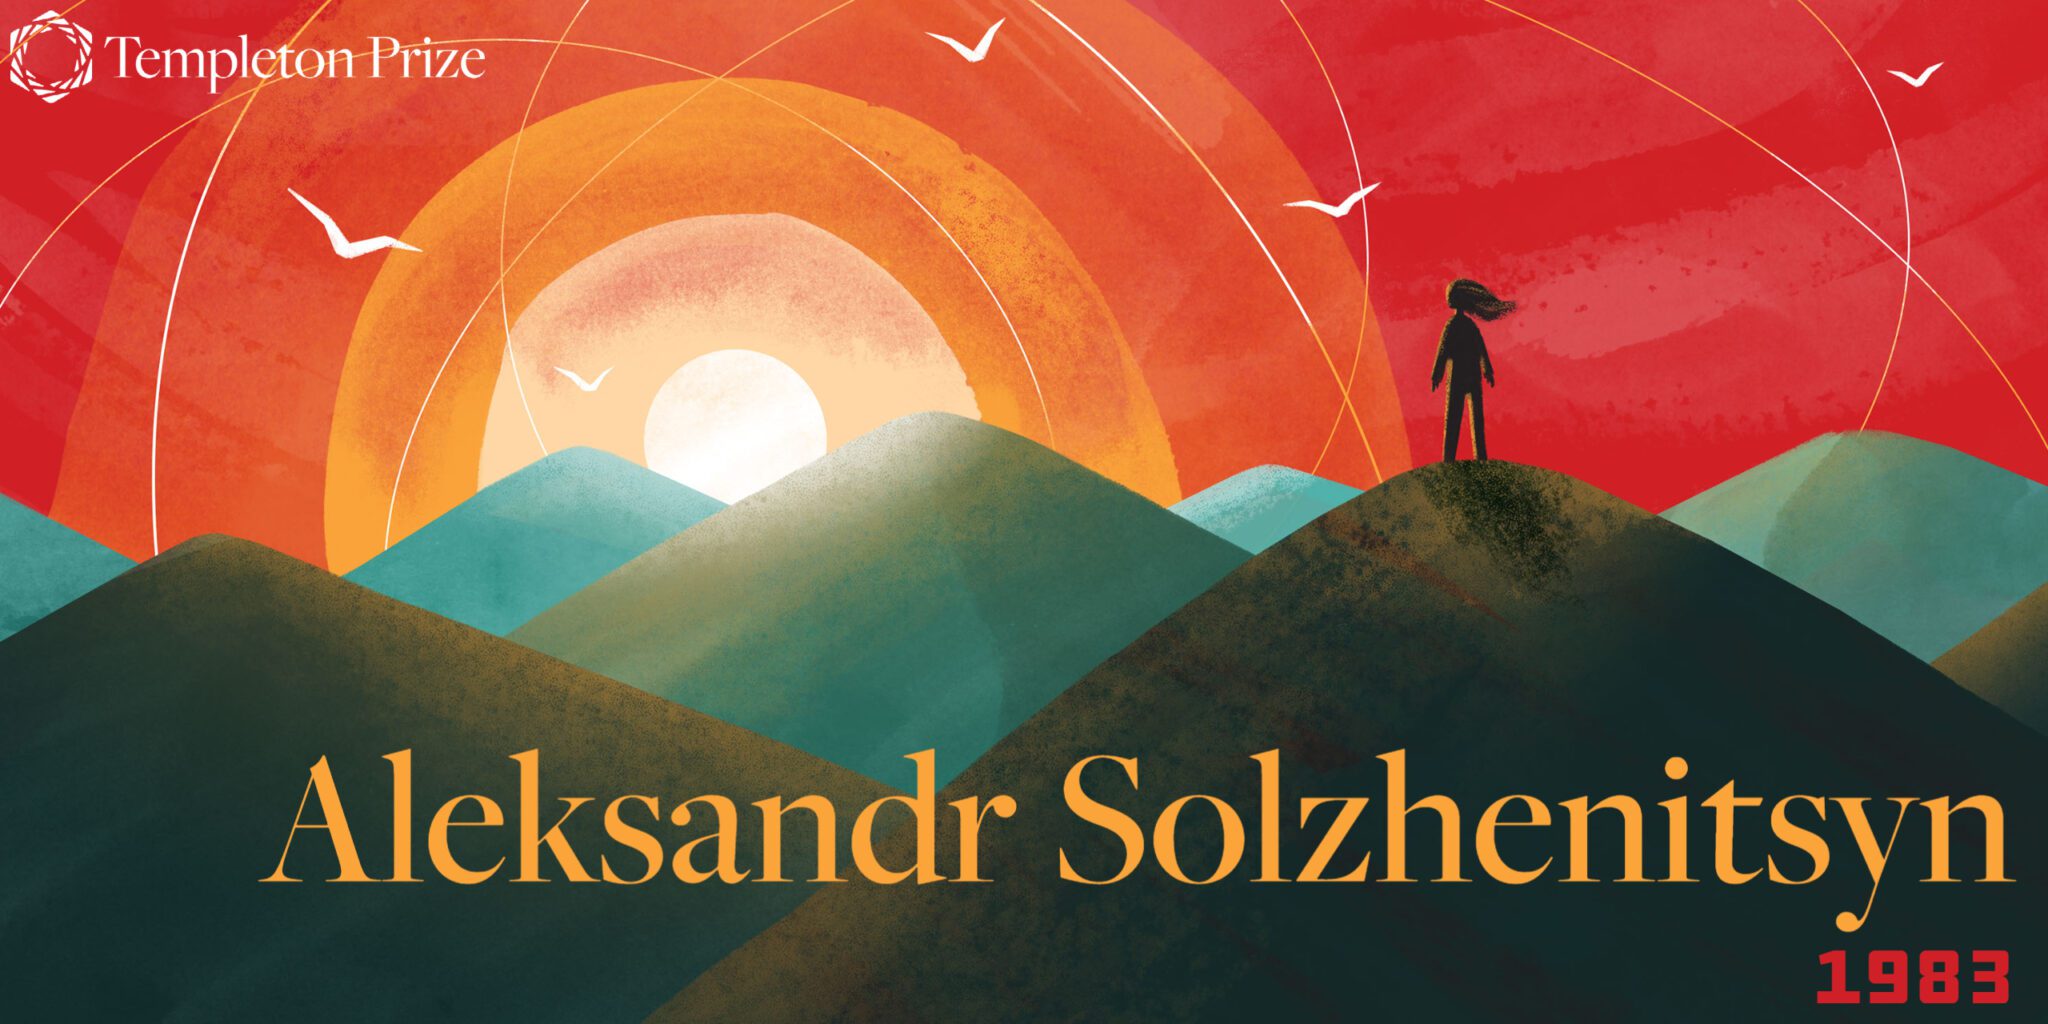 The Enduring Spirit of Aleksandr Solzhenitsyn